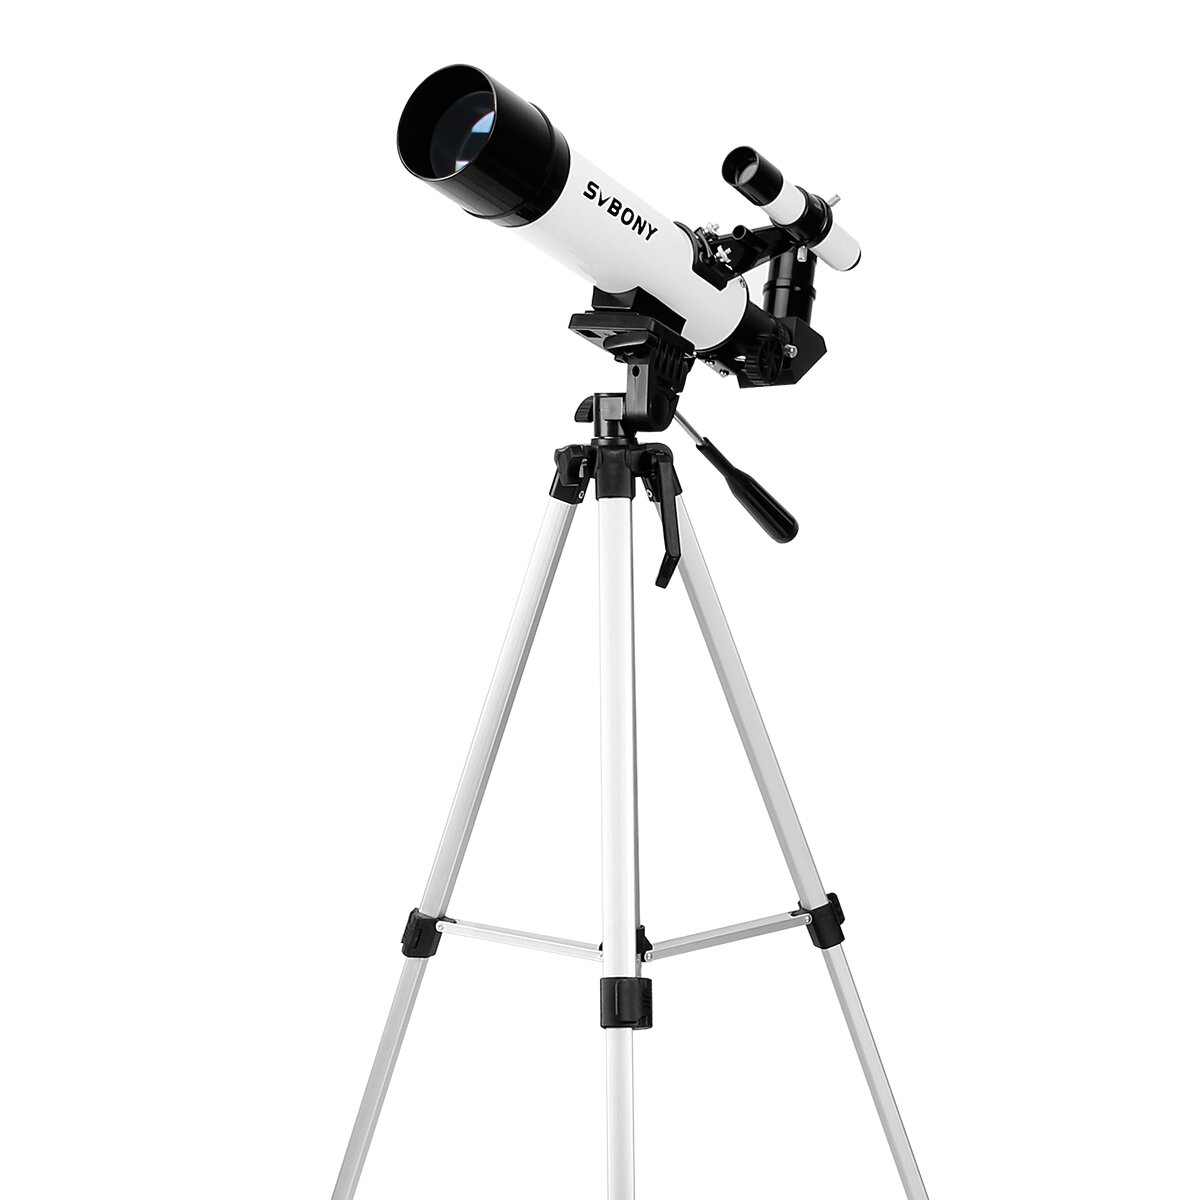 Teleskop astronomiczny SVBONY SV25 z soczewką Barlowa 3X, wizjerem optycznym dla ptaków i monokularem z trójnogiem